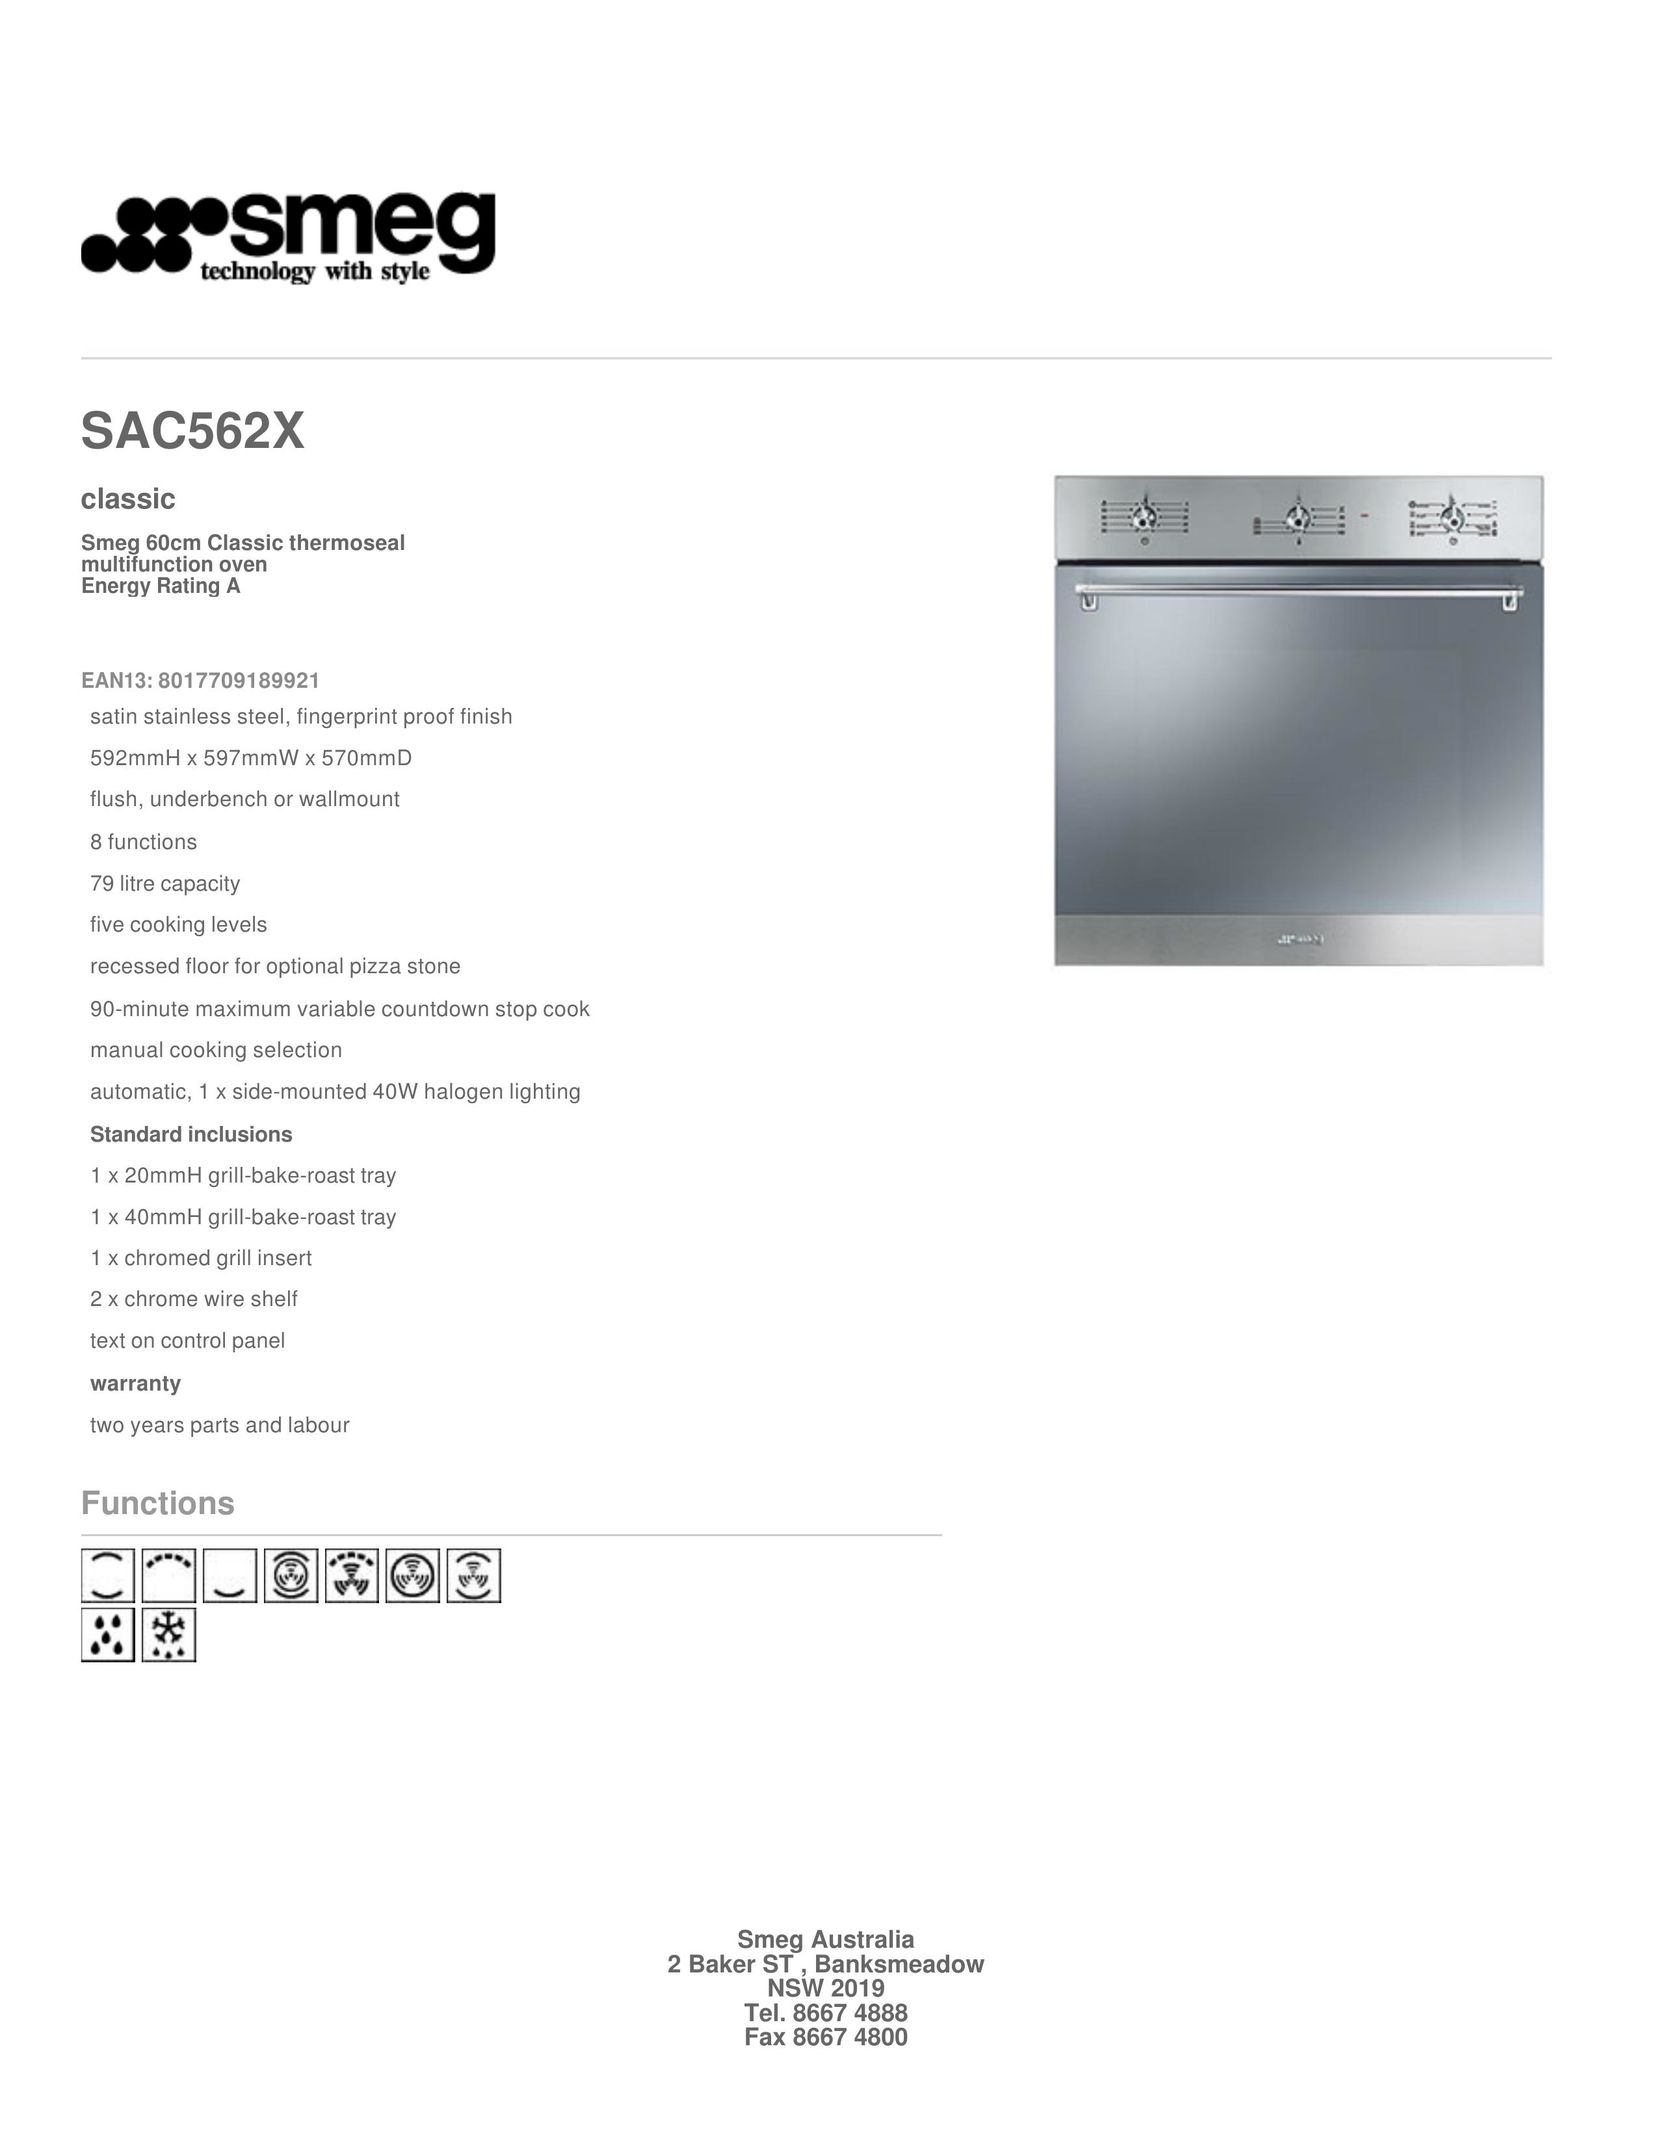 Smeg SAC562X Convection Oven User Manual